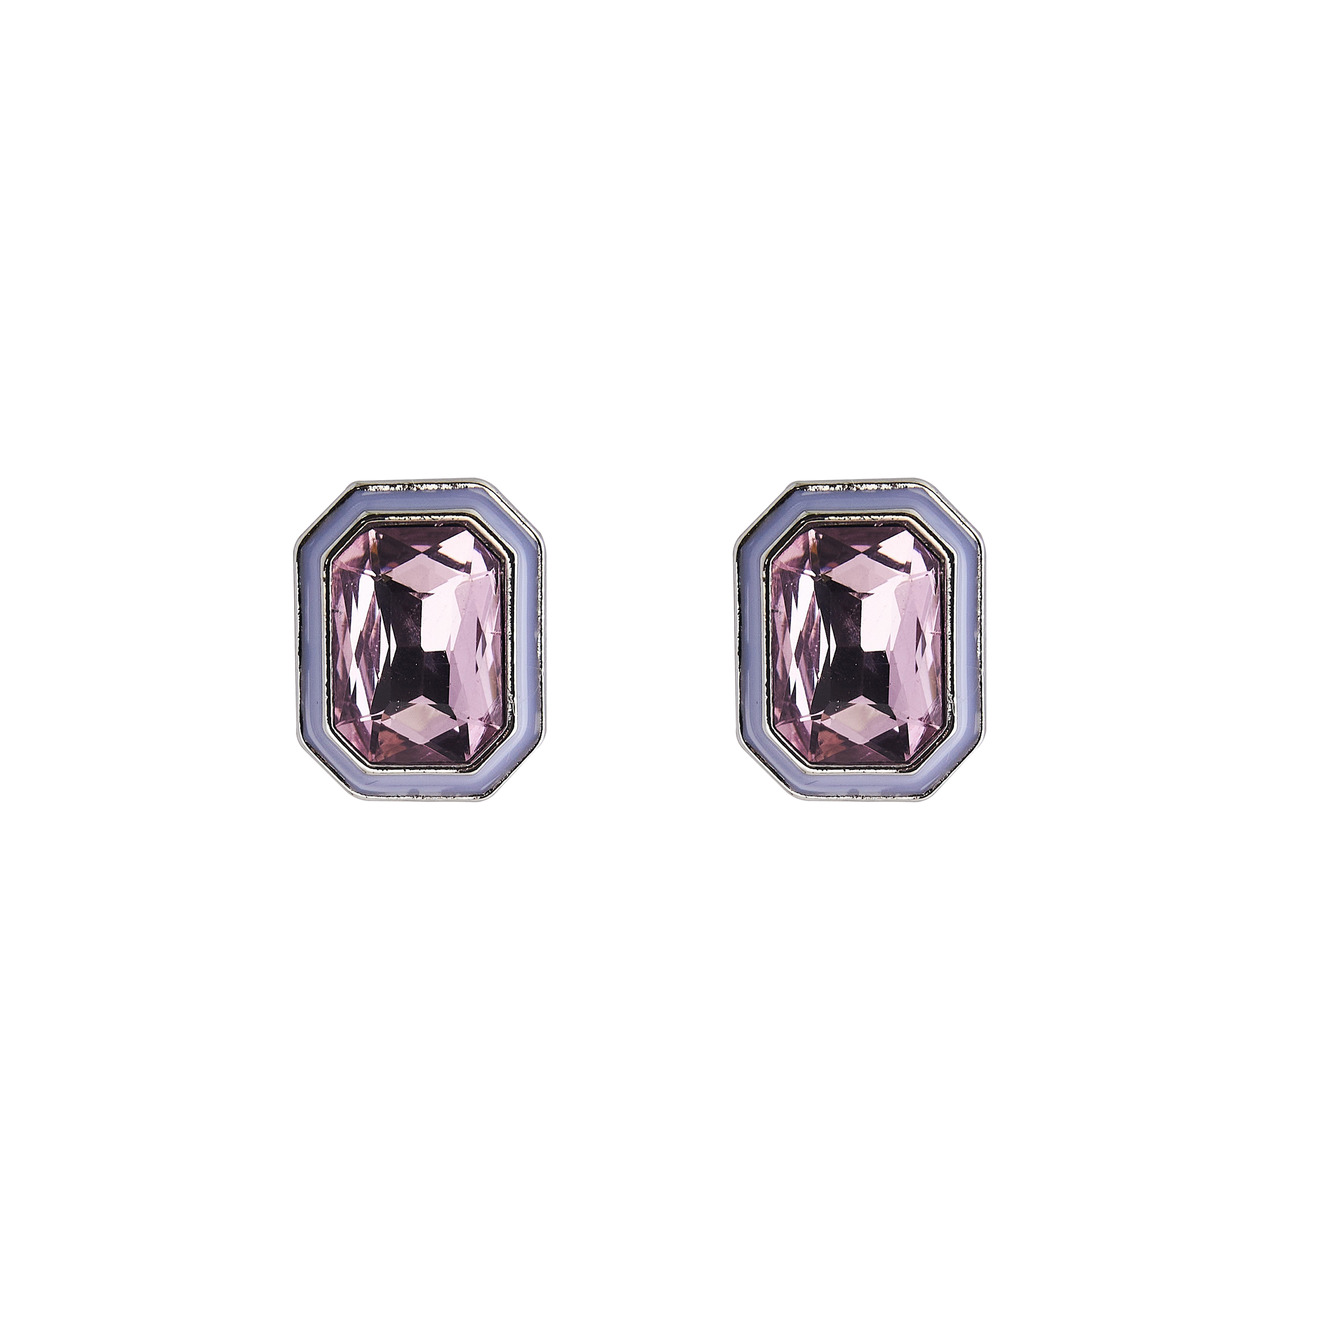 Herald Percy Серебристые серьги с розовыми кристаллами и белой эмалью herald percy серебристый браслет с ярко розовыми кристаллами